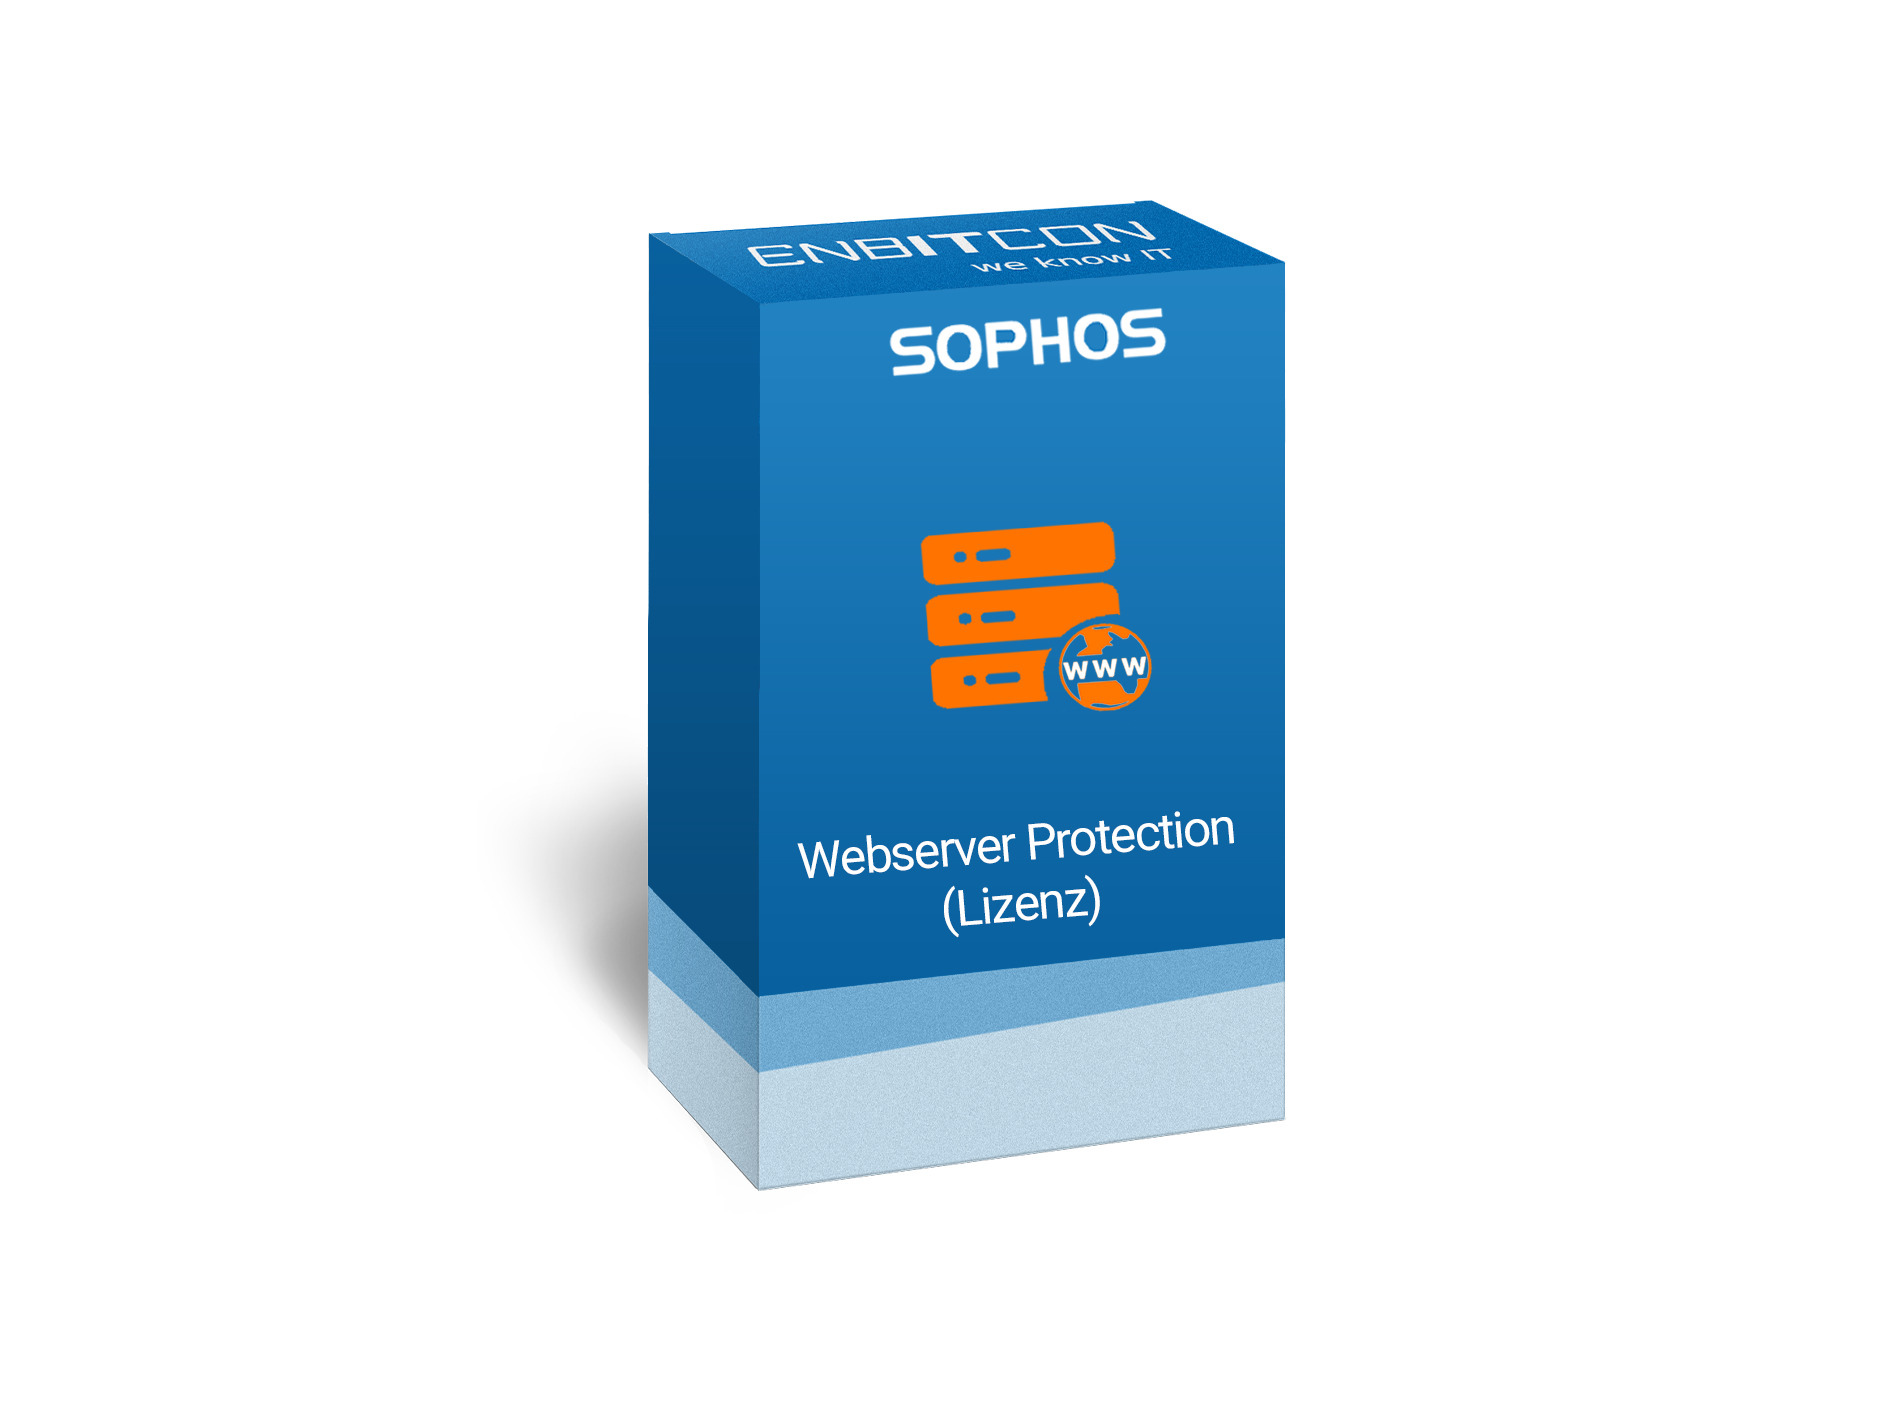 Sophos Webserver Protection Vorschaubild bestehend aus einem blauen Schild, indem sich ein orangenes Servergebilde befindet